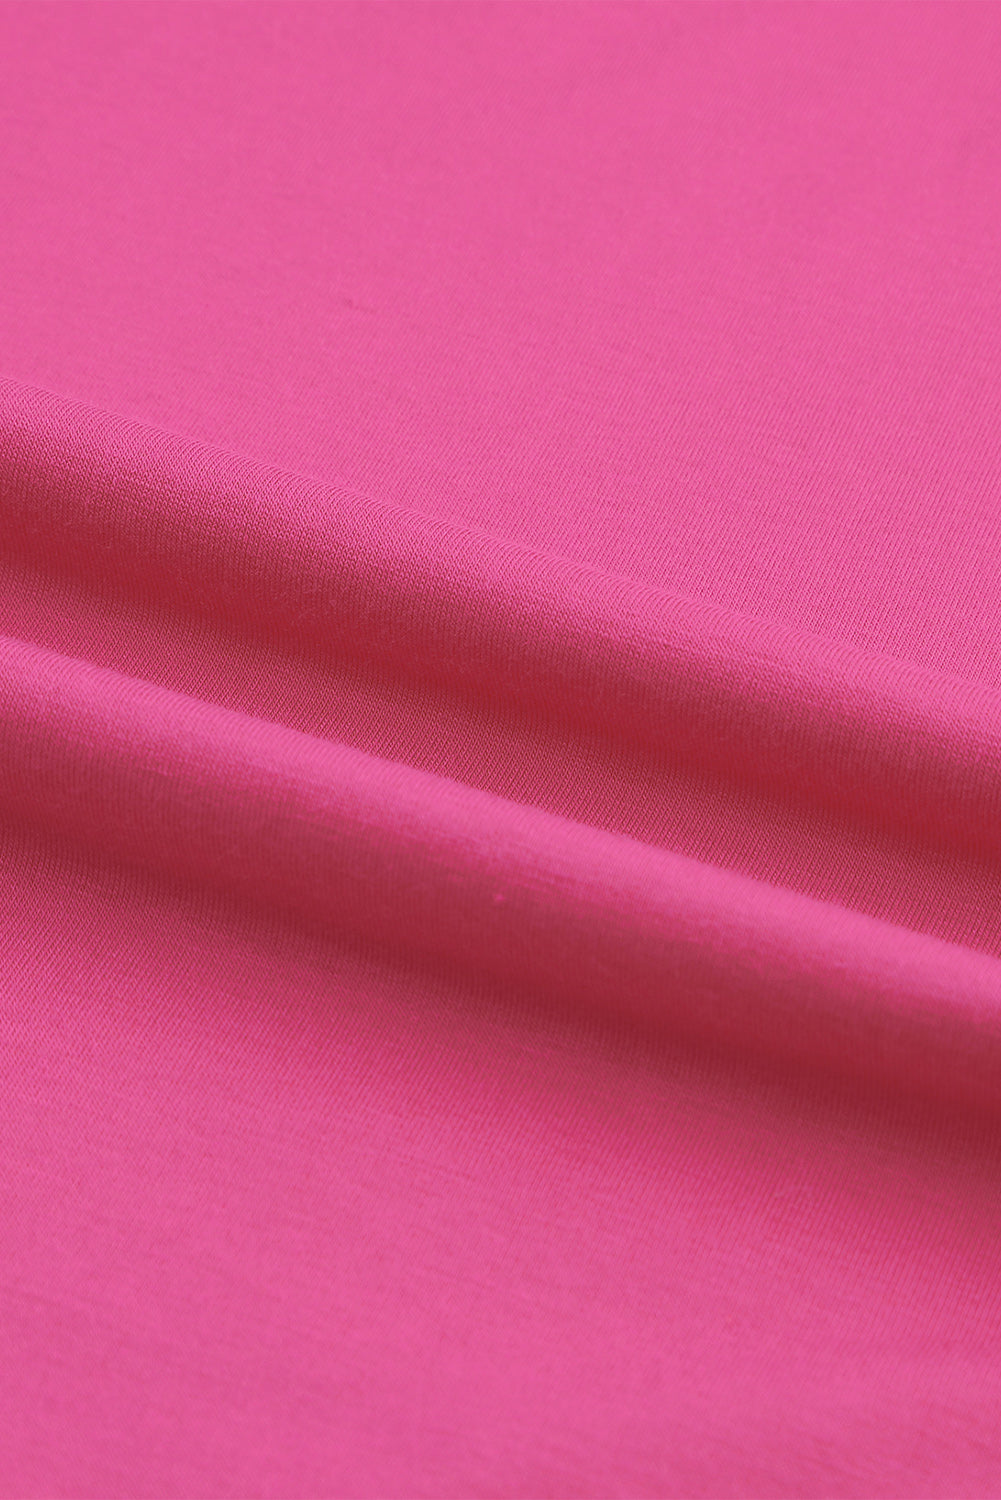 Rožnata asimetrična majica s križanimi rokavi na eno ramo